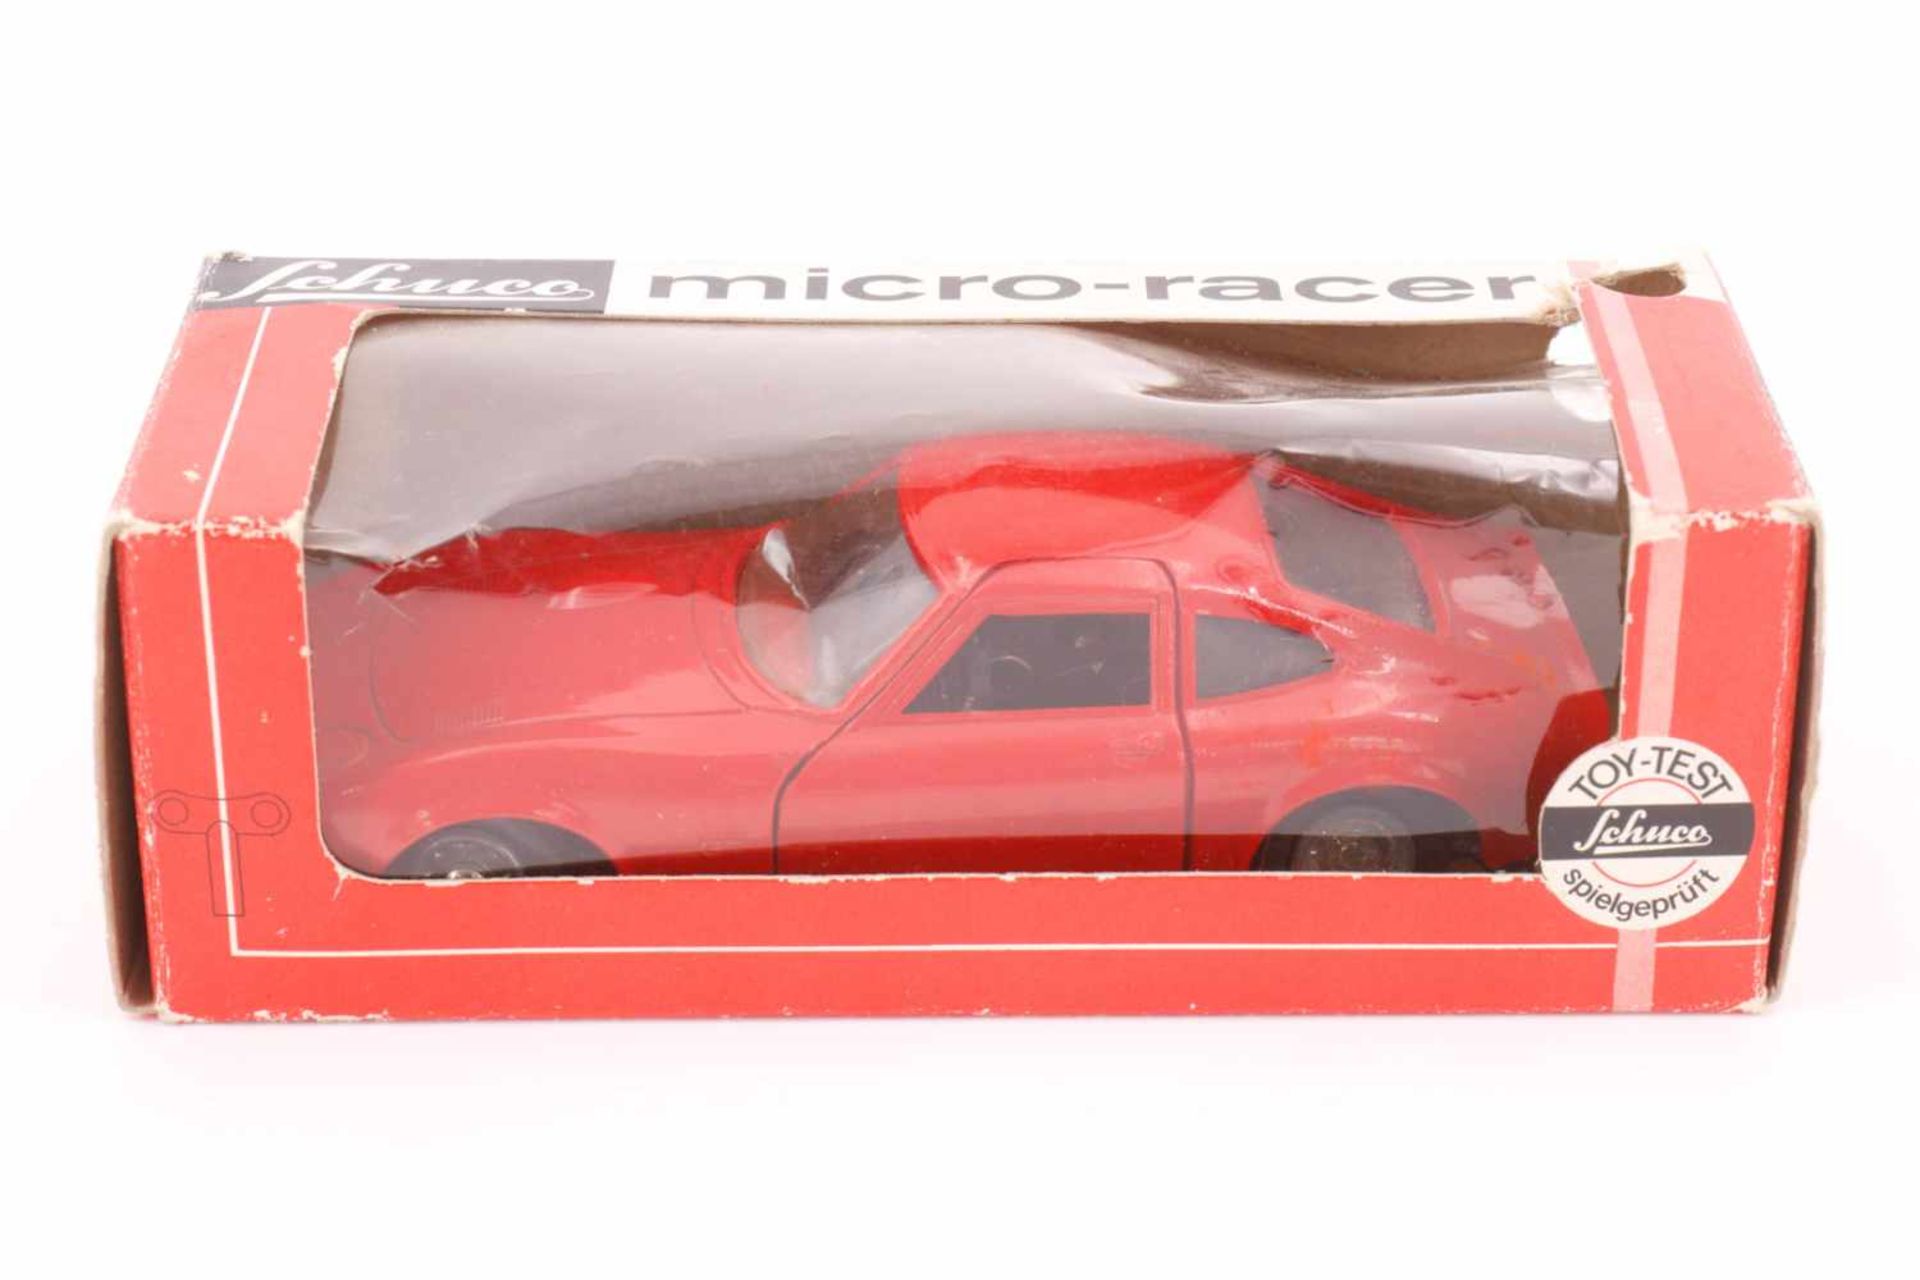 Schuco Micro Racer 1048, Western Germany, rot, Uhrwerk intakt, mit Schlüssel und Anleitung,